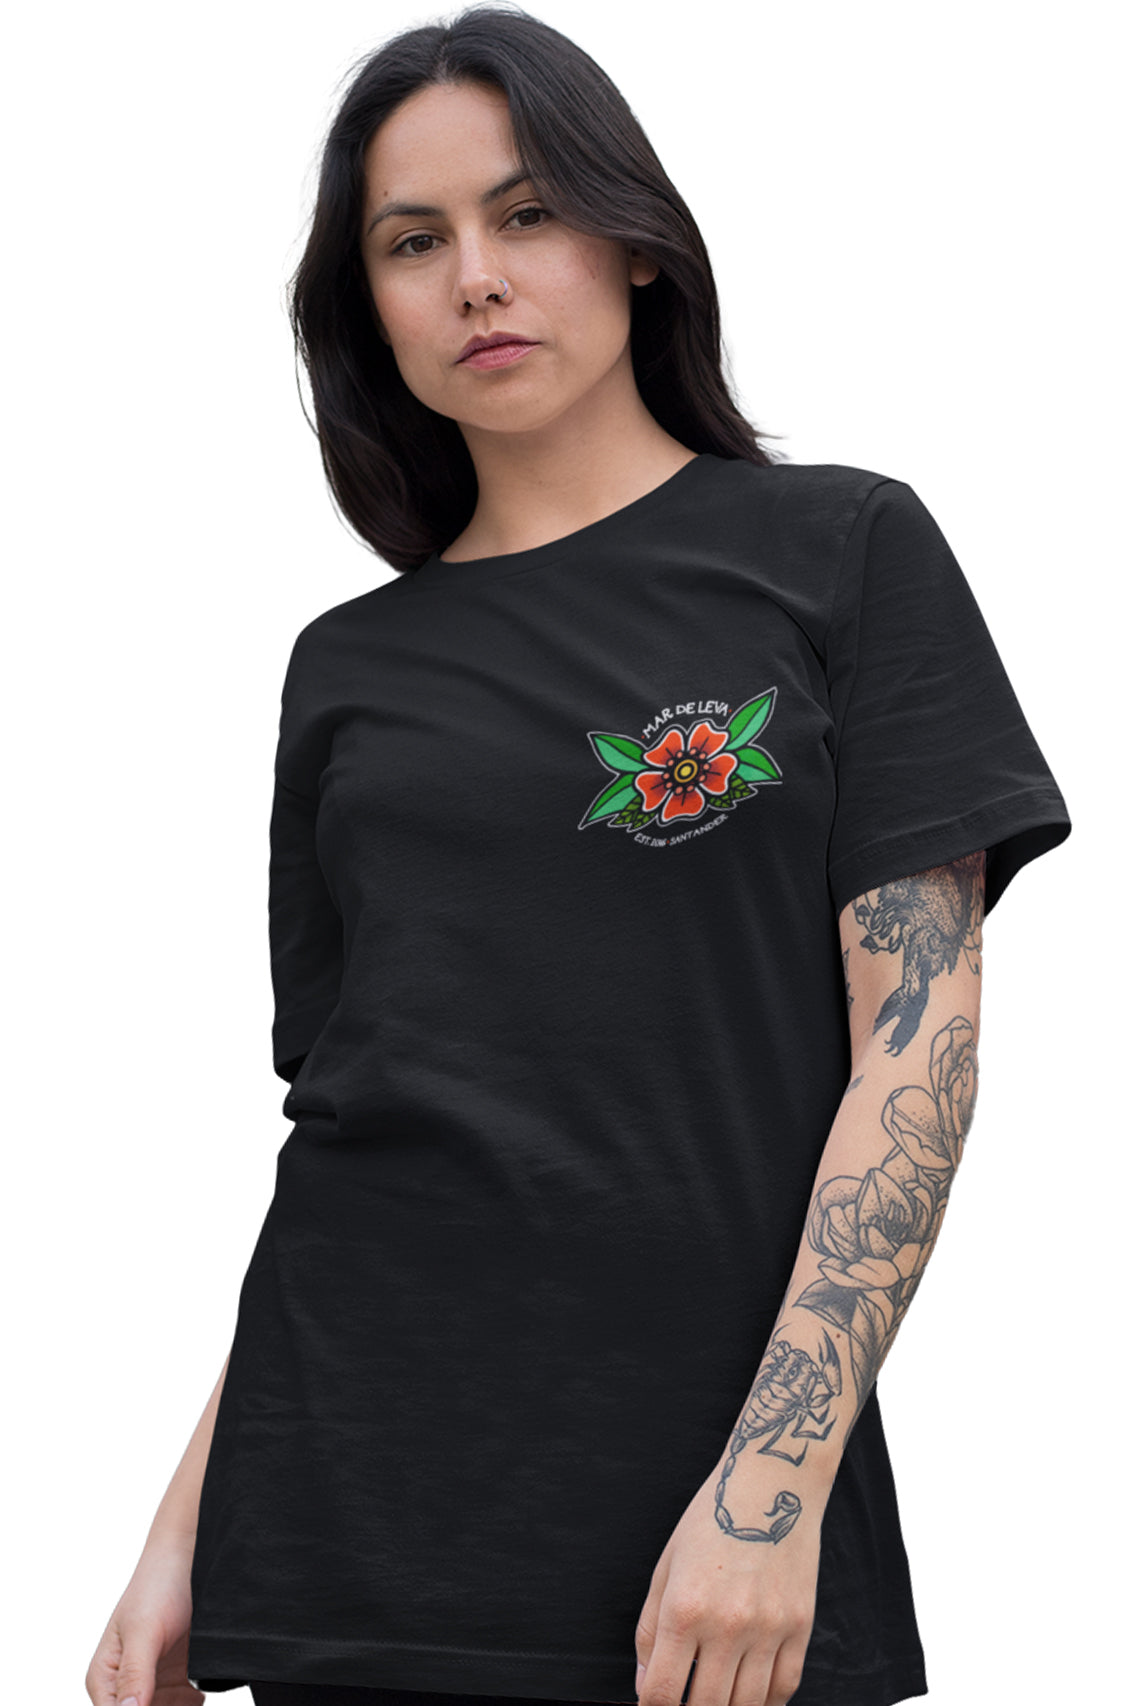 Camiseta Los Raqueros - Pecho y espalda Negro - Mar de Leva